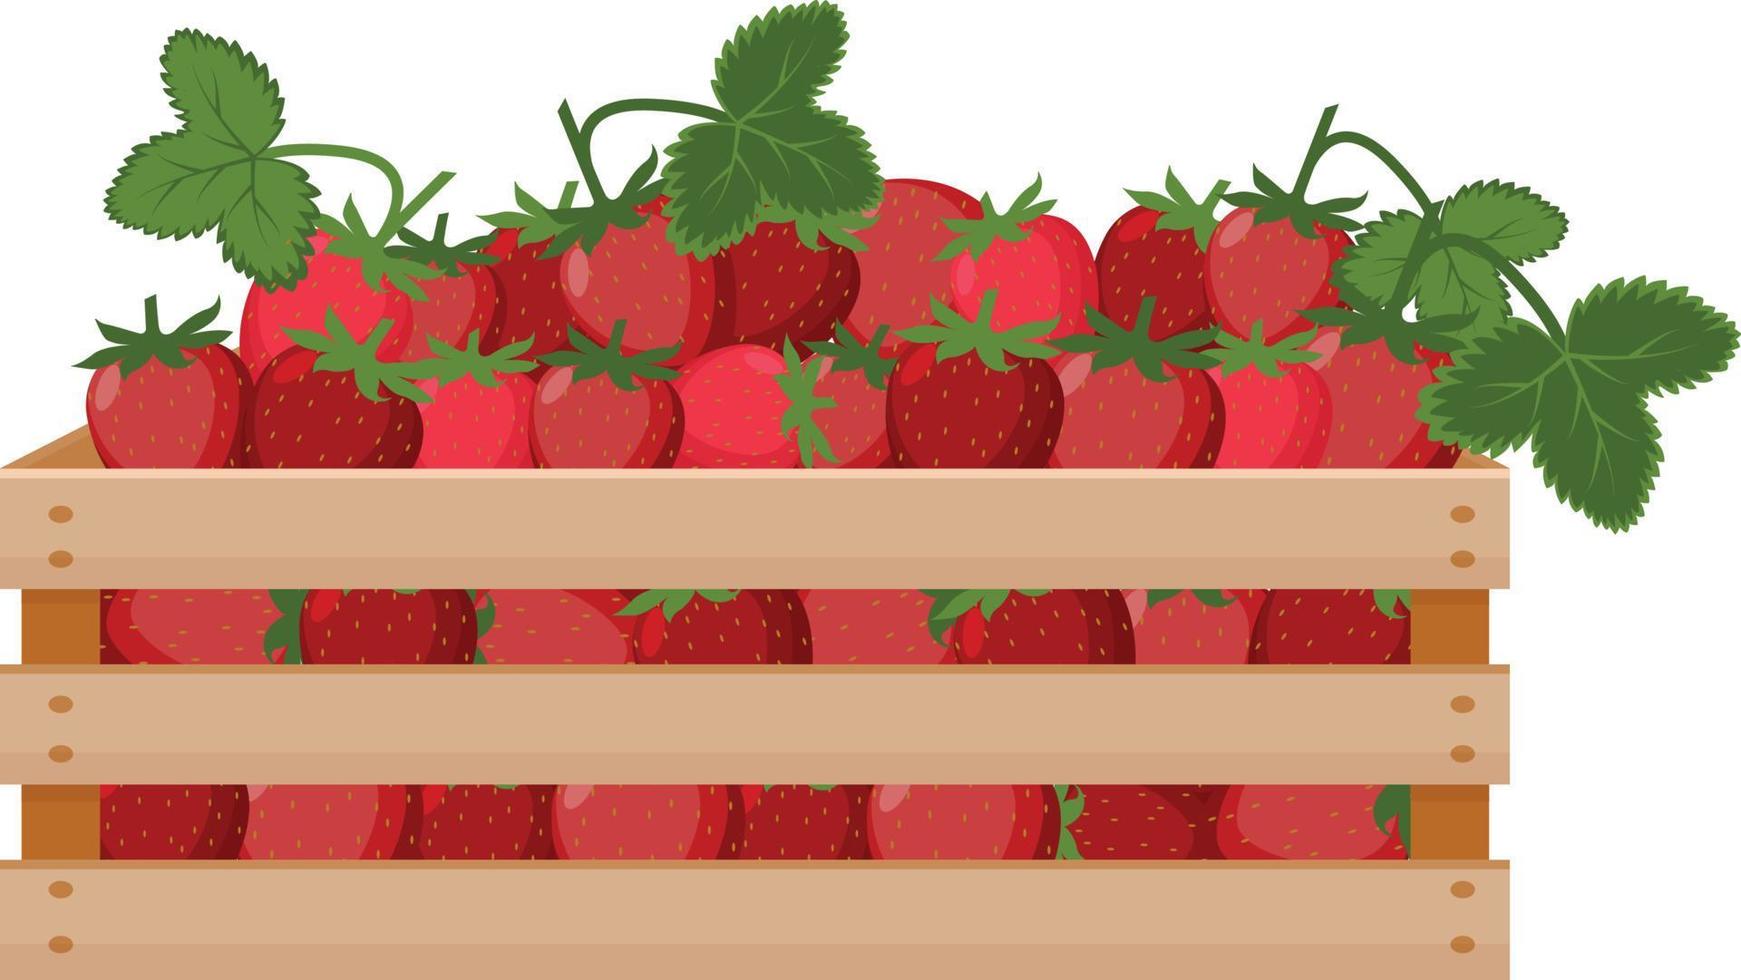 een helder zomer illustratie beeltenis een houten doos met rood rijp aardbeien en groen bladeren. de geoogst oogst van sappig aardbeien in een doos gemaakt van hout. vector illustratie achtergrond